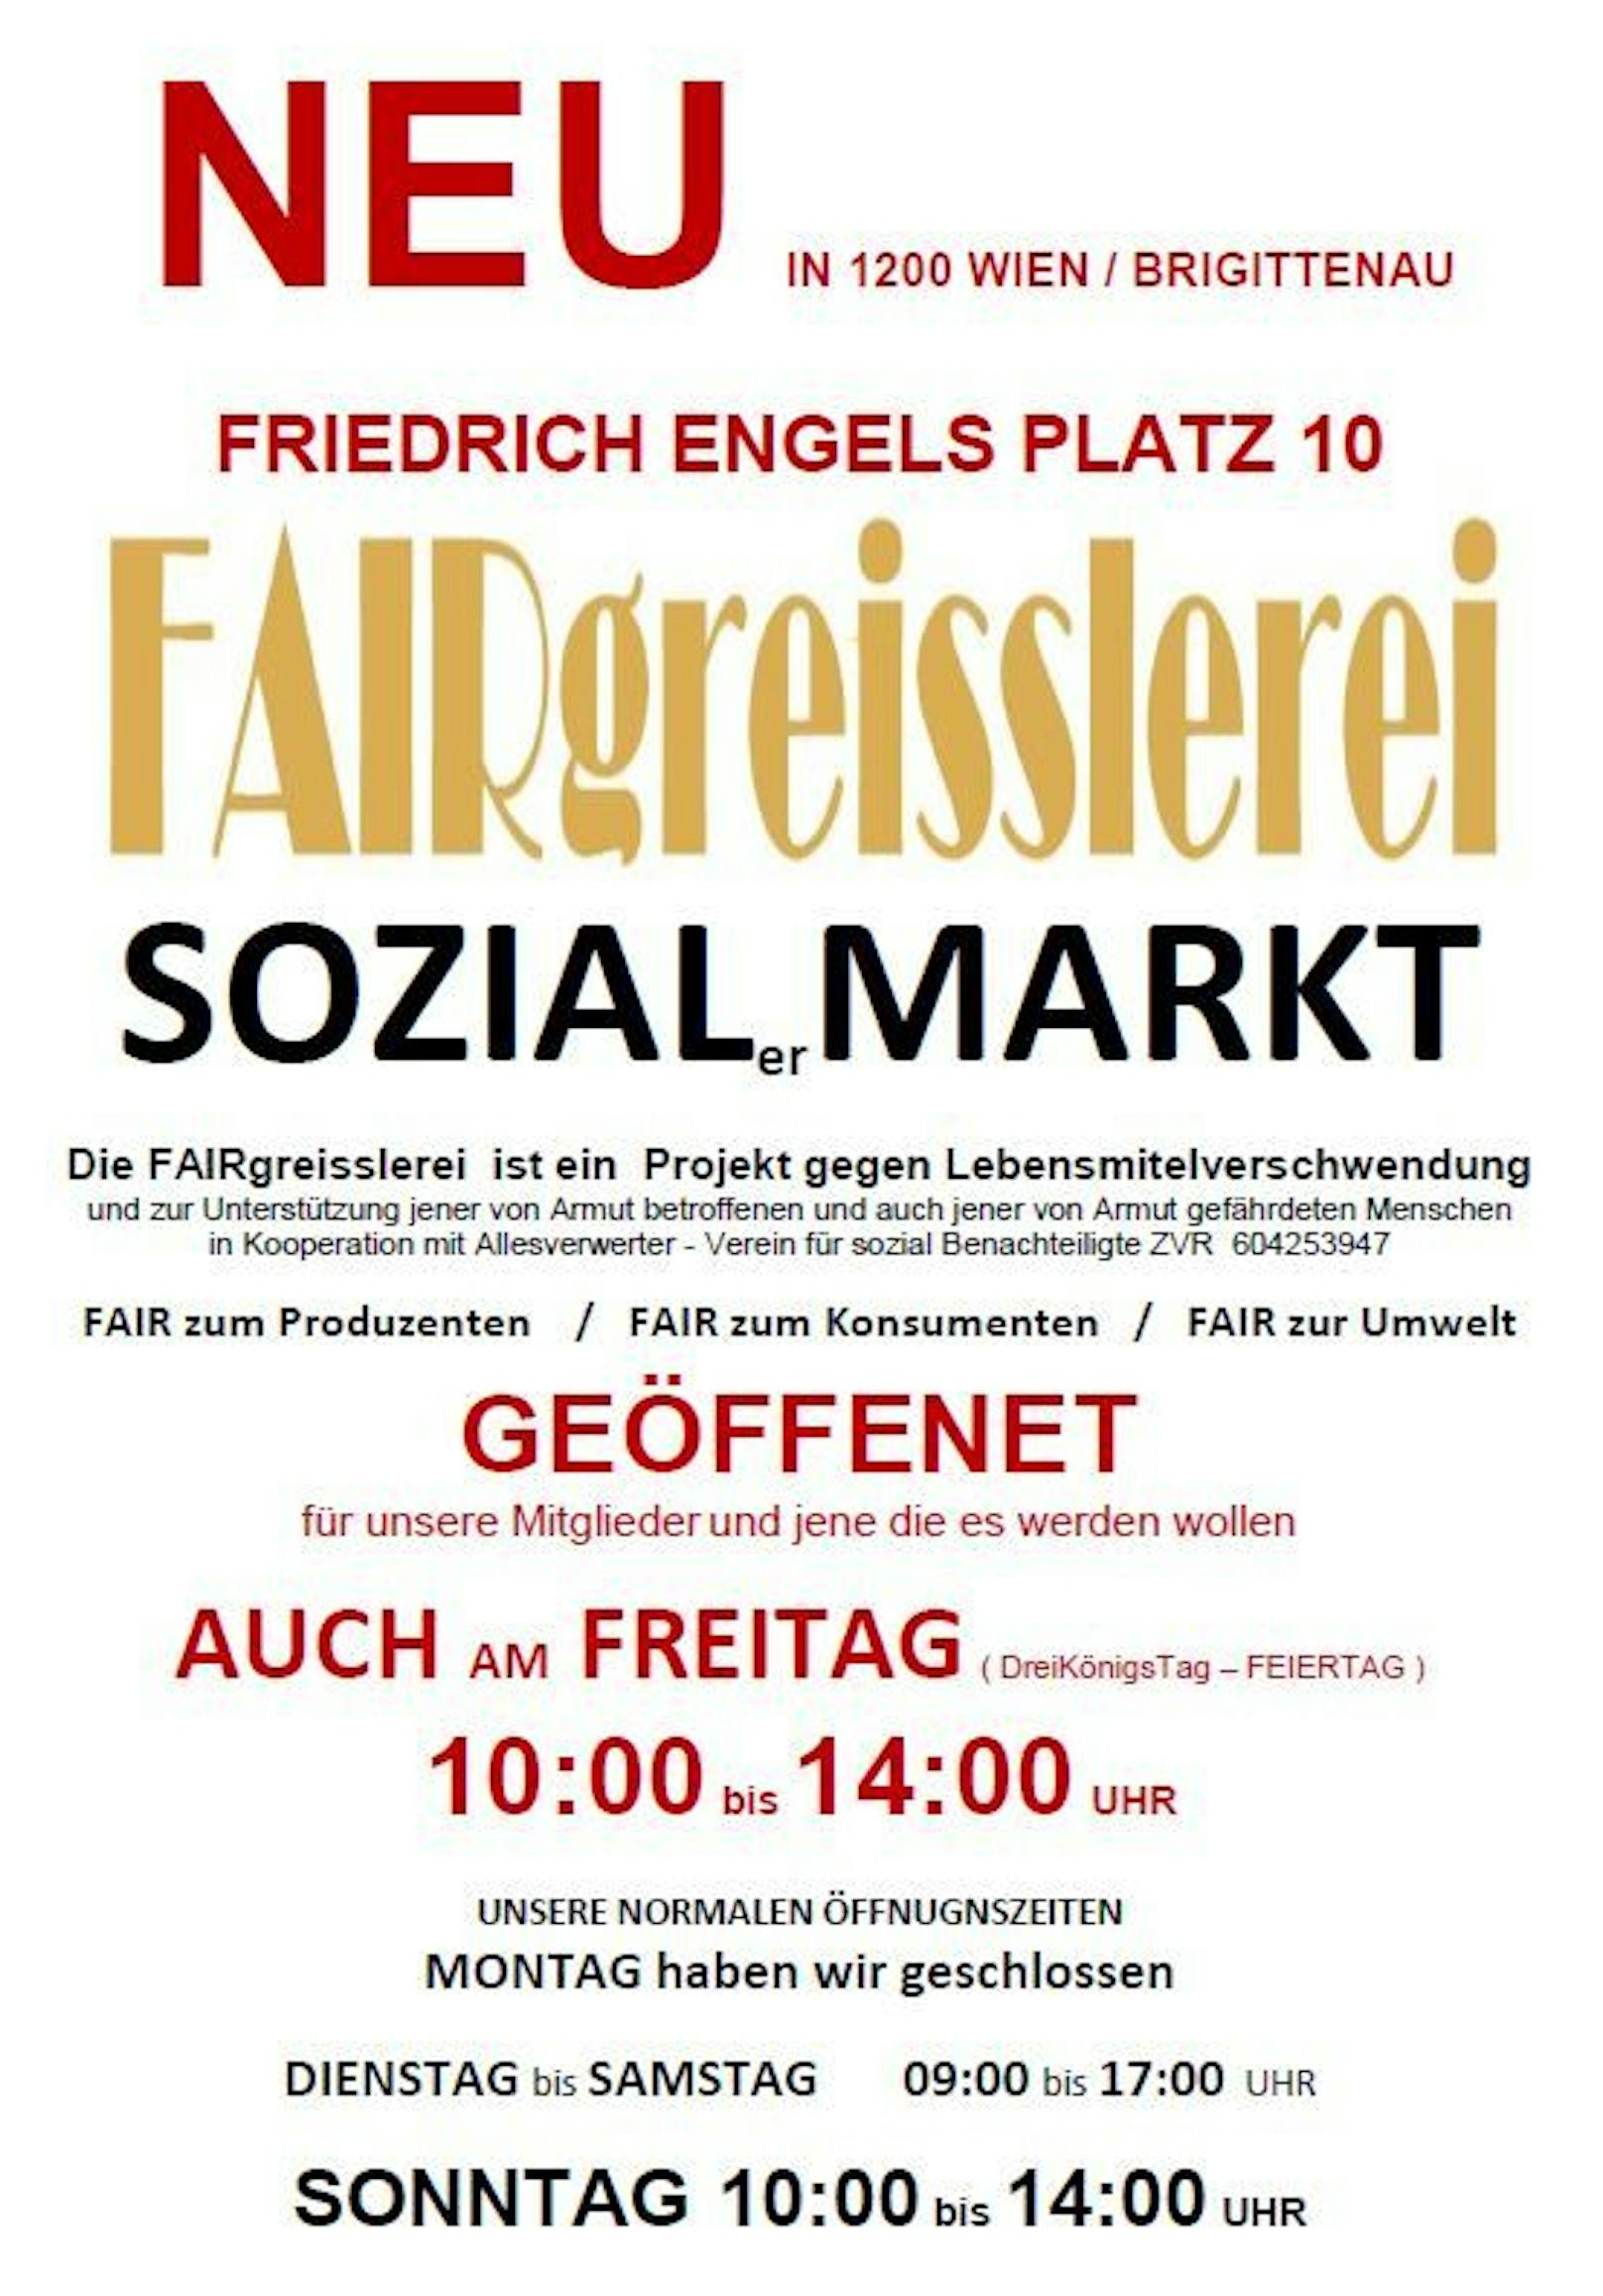 Der neue Sozialmarkt in Wien-Brigittenau wird am Freitag eröffnet.